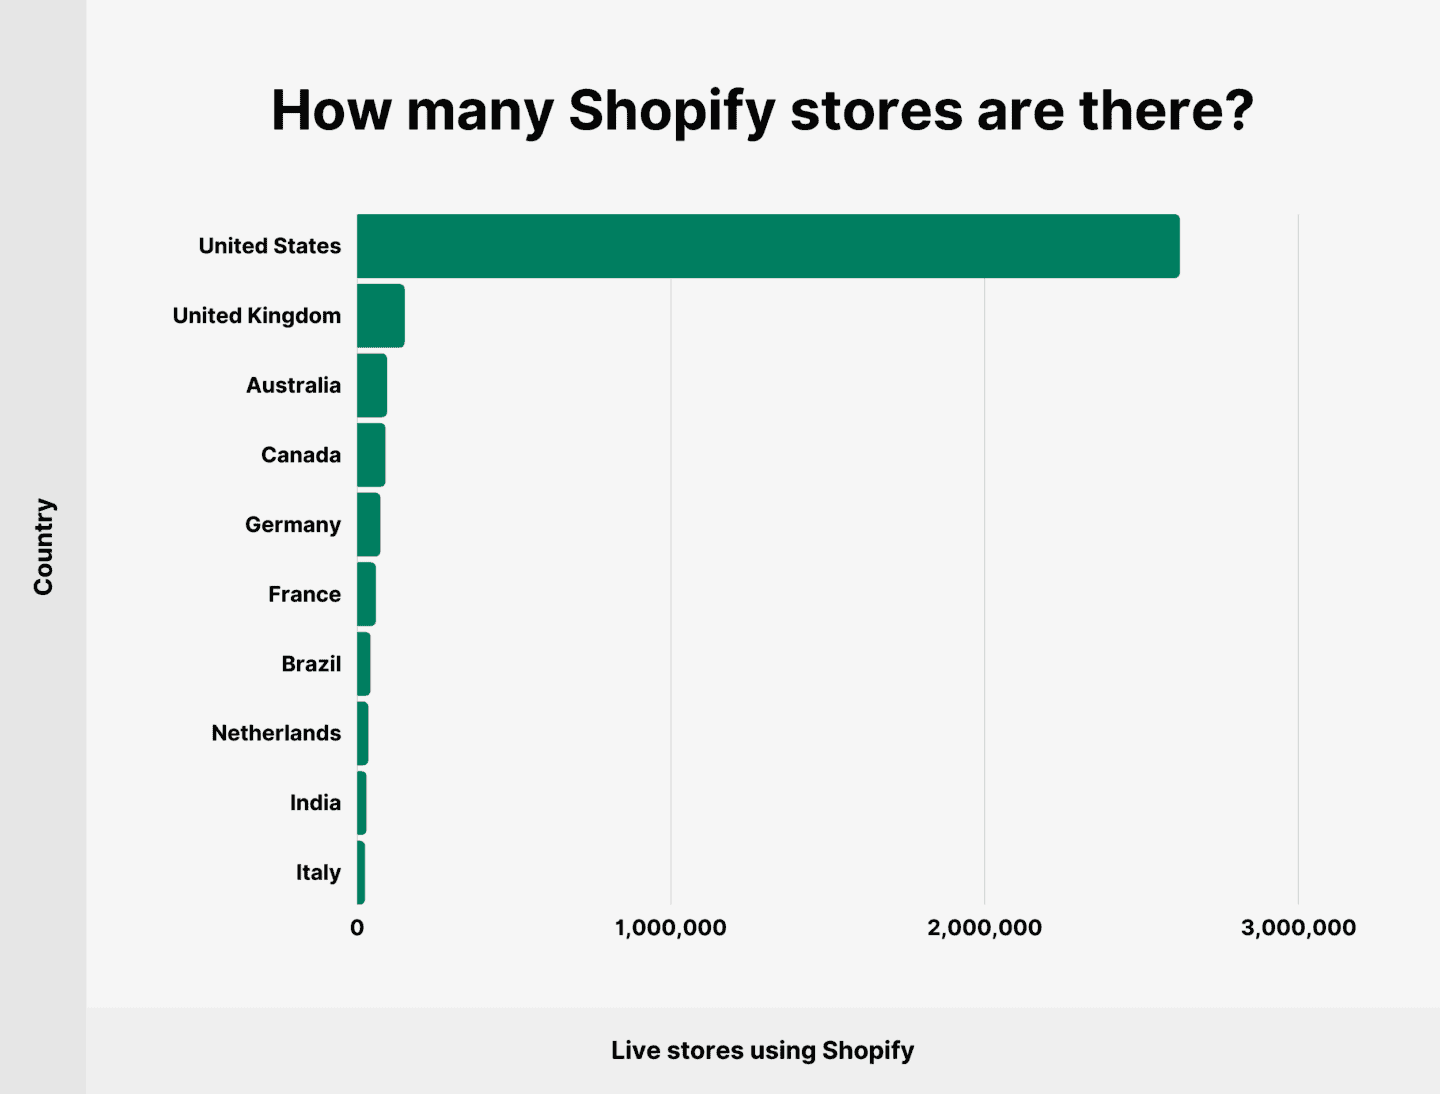 La mayoría de las tiendas Shopify se encuentran actualmente en Estados Unidos.